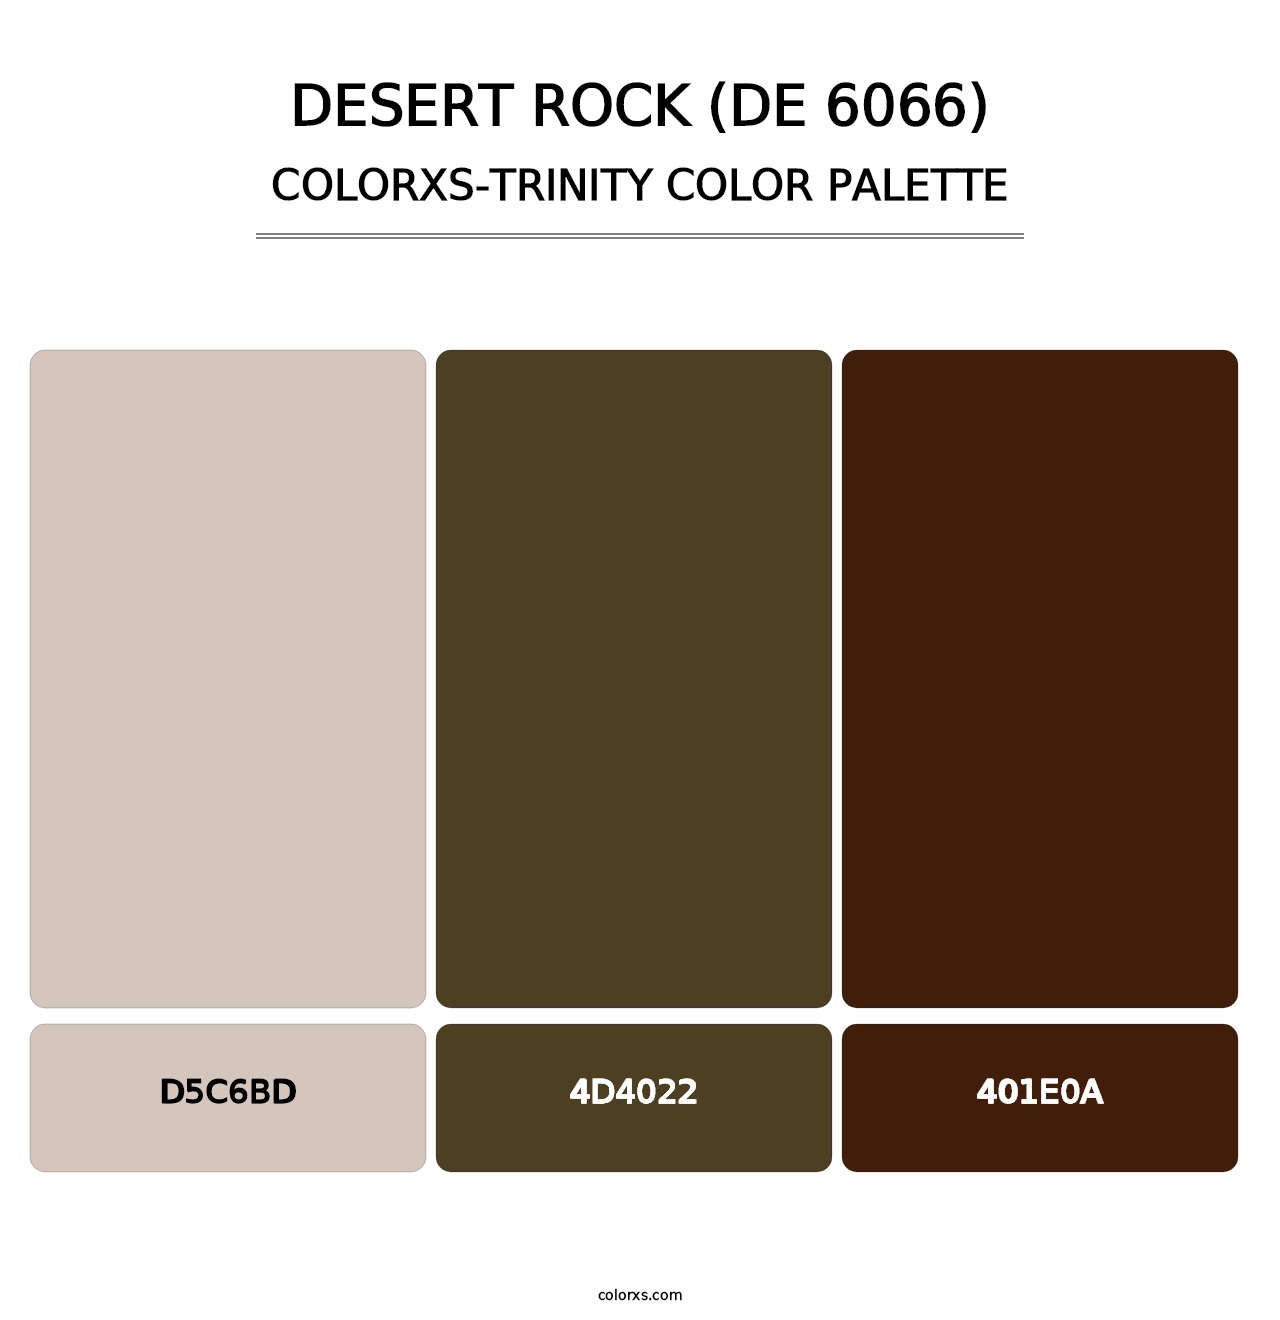 Desert Rock (DE 6066) - Colorxs Trinity Palette